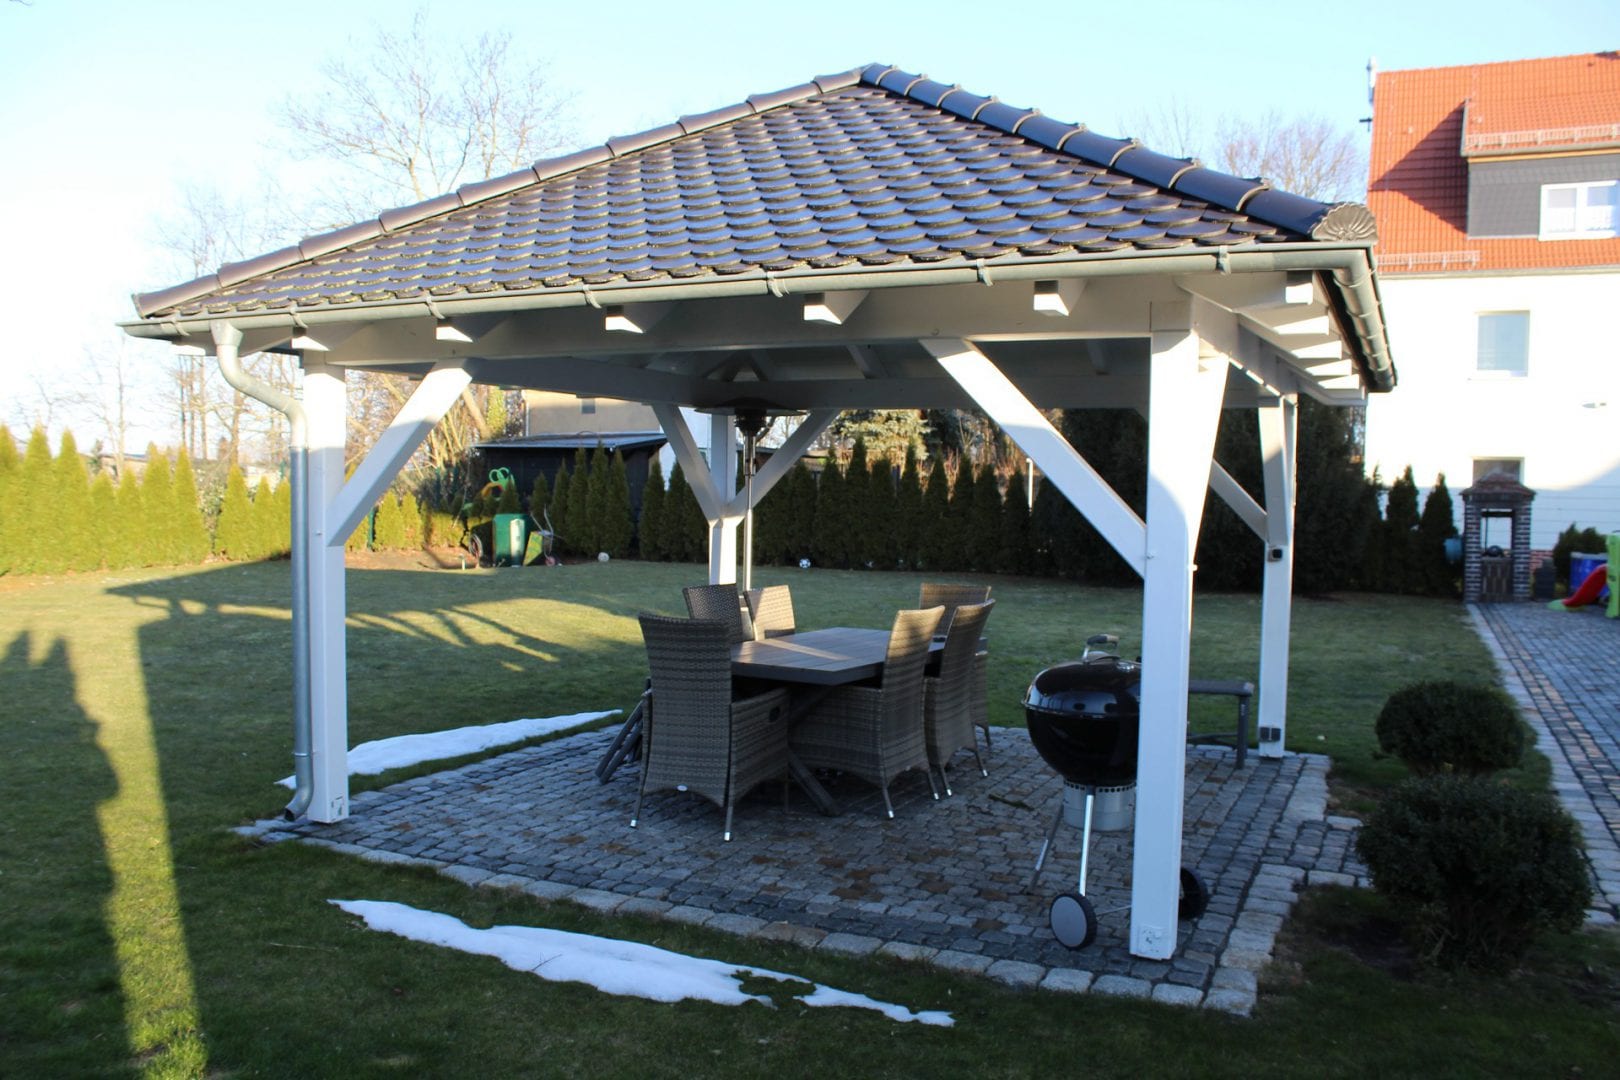 Schöne Ansicht eines viereckigen Gartenpavillons mit Zeltdach und Biberdeckung. Dachneigung beträgt ca. 30 Grad. Die umlaufende Rinne wird über nur ein Fallrohr entwässert.